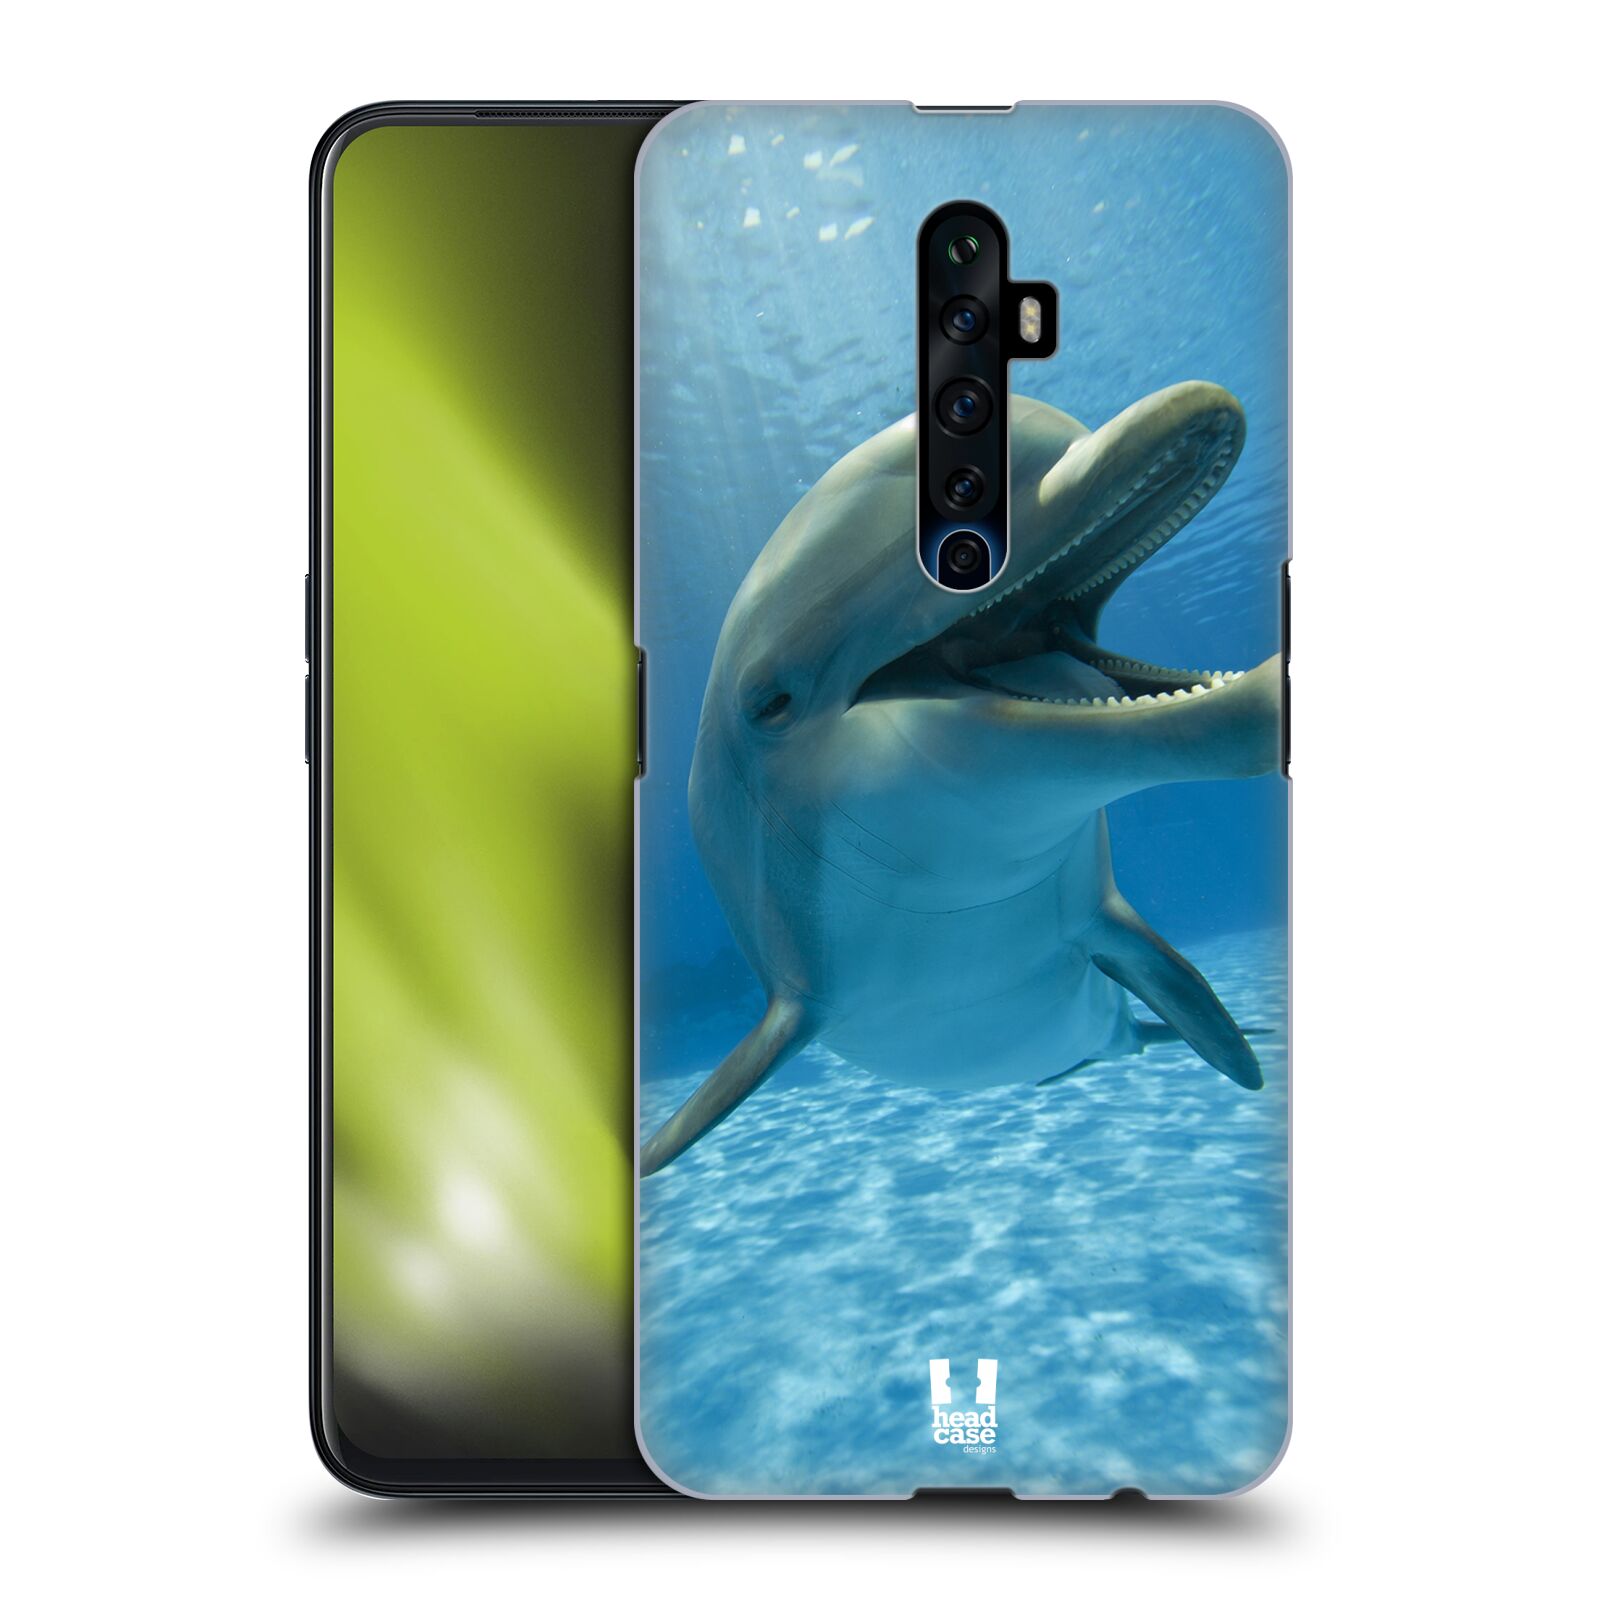 Zadní obal pro mobil Oppo Reno 2Z - HEAD CASE - Svět zvířat delfín v moři